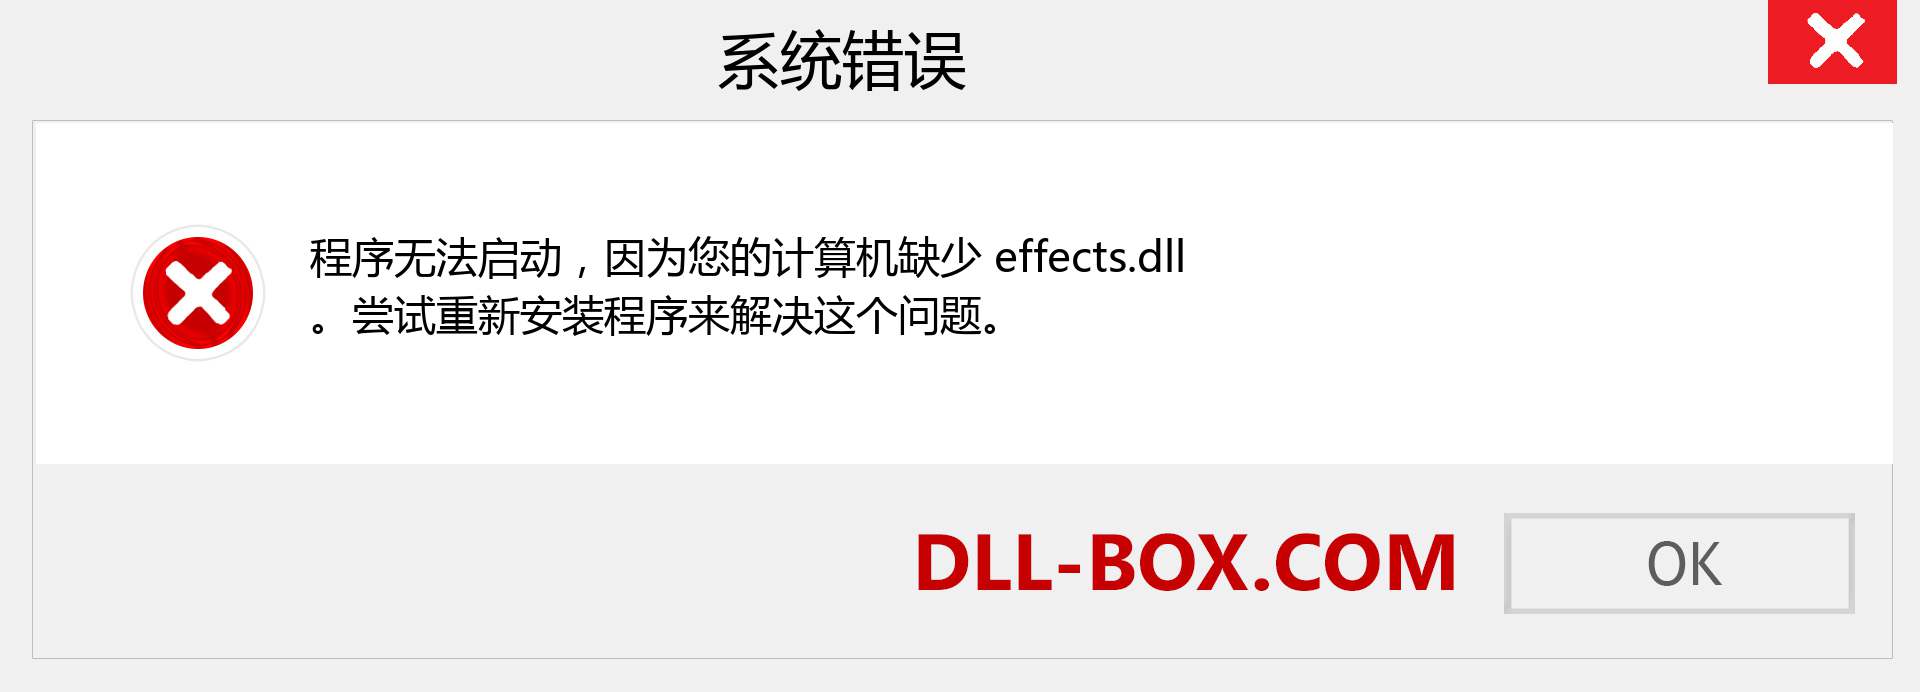 effects.dll 文件丢失？。 适用于 Windows 7、8、10 的下载 - 修复 Windows、照片、图像上的 effects dll 丢失错误